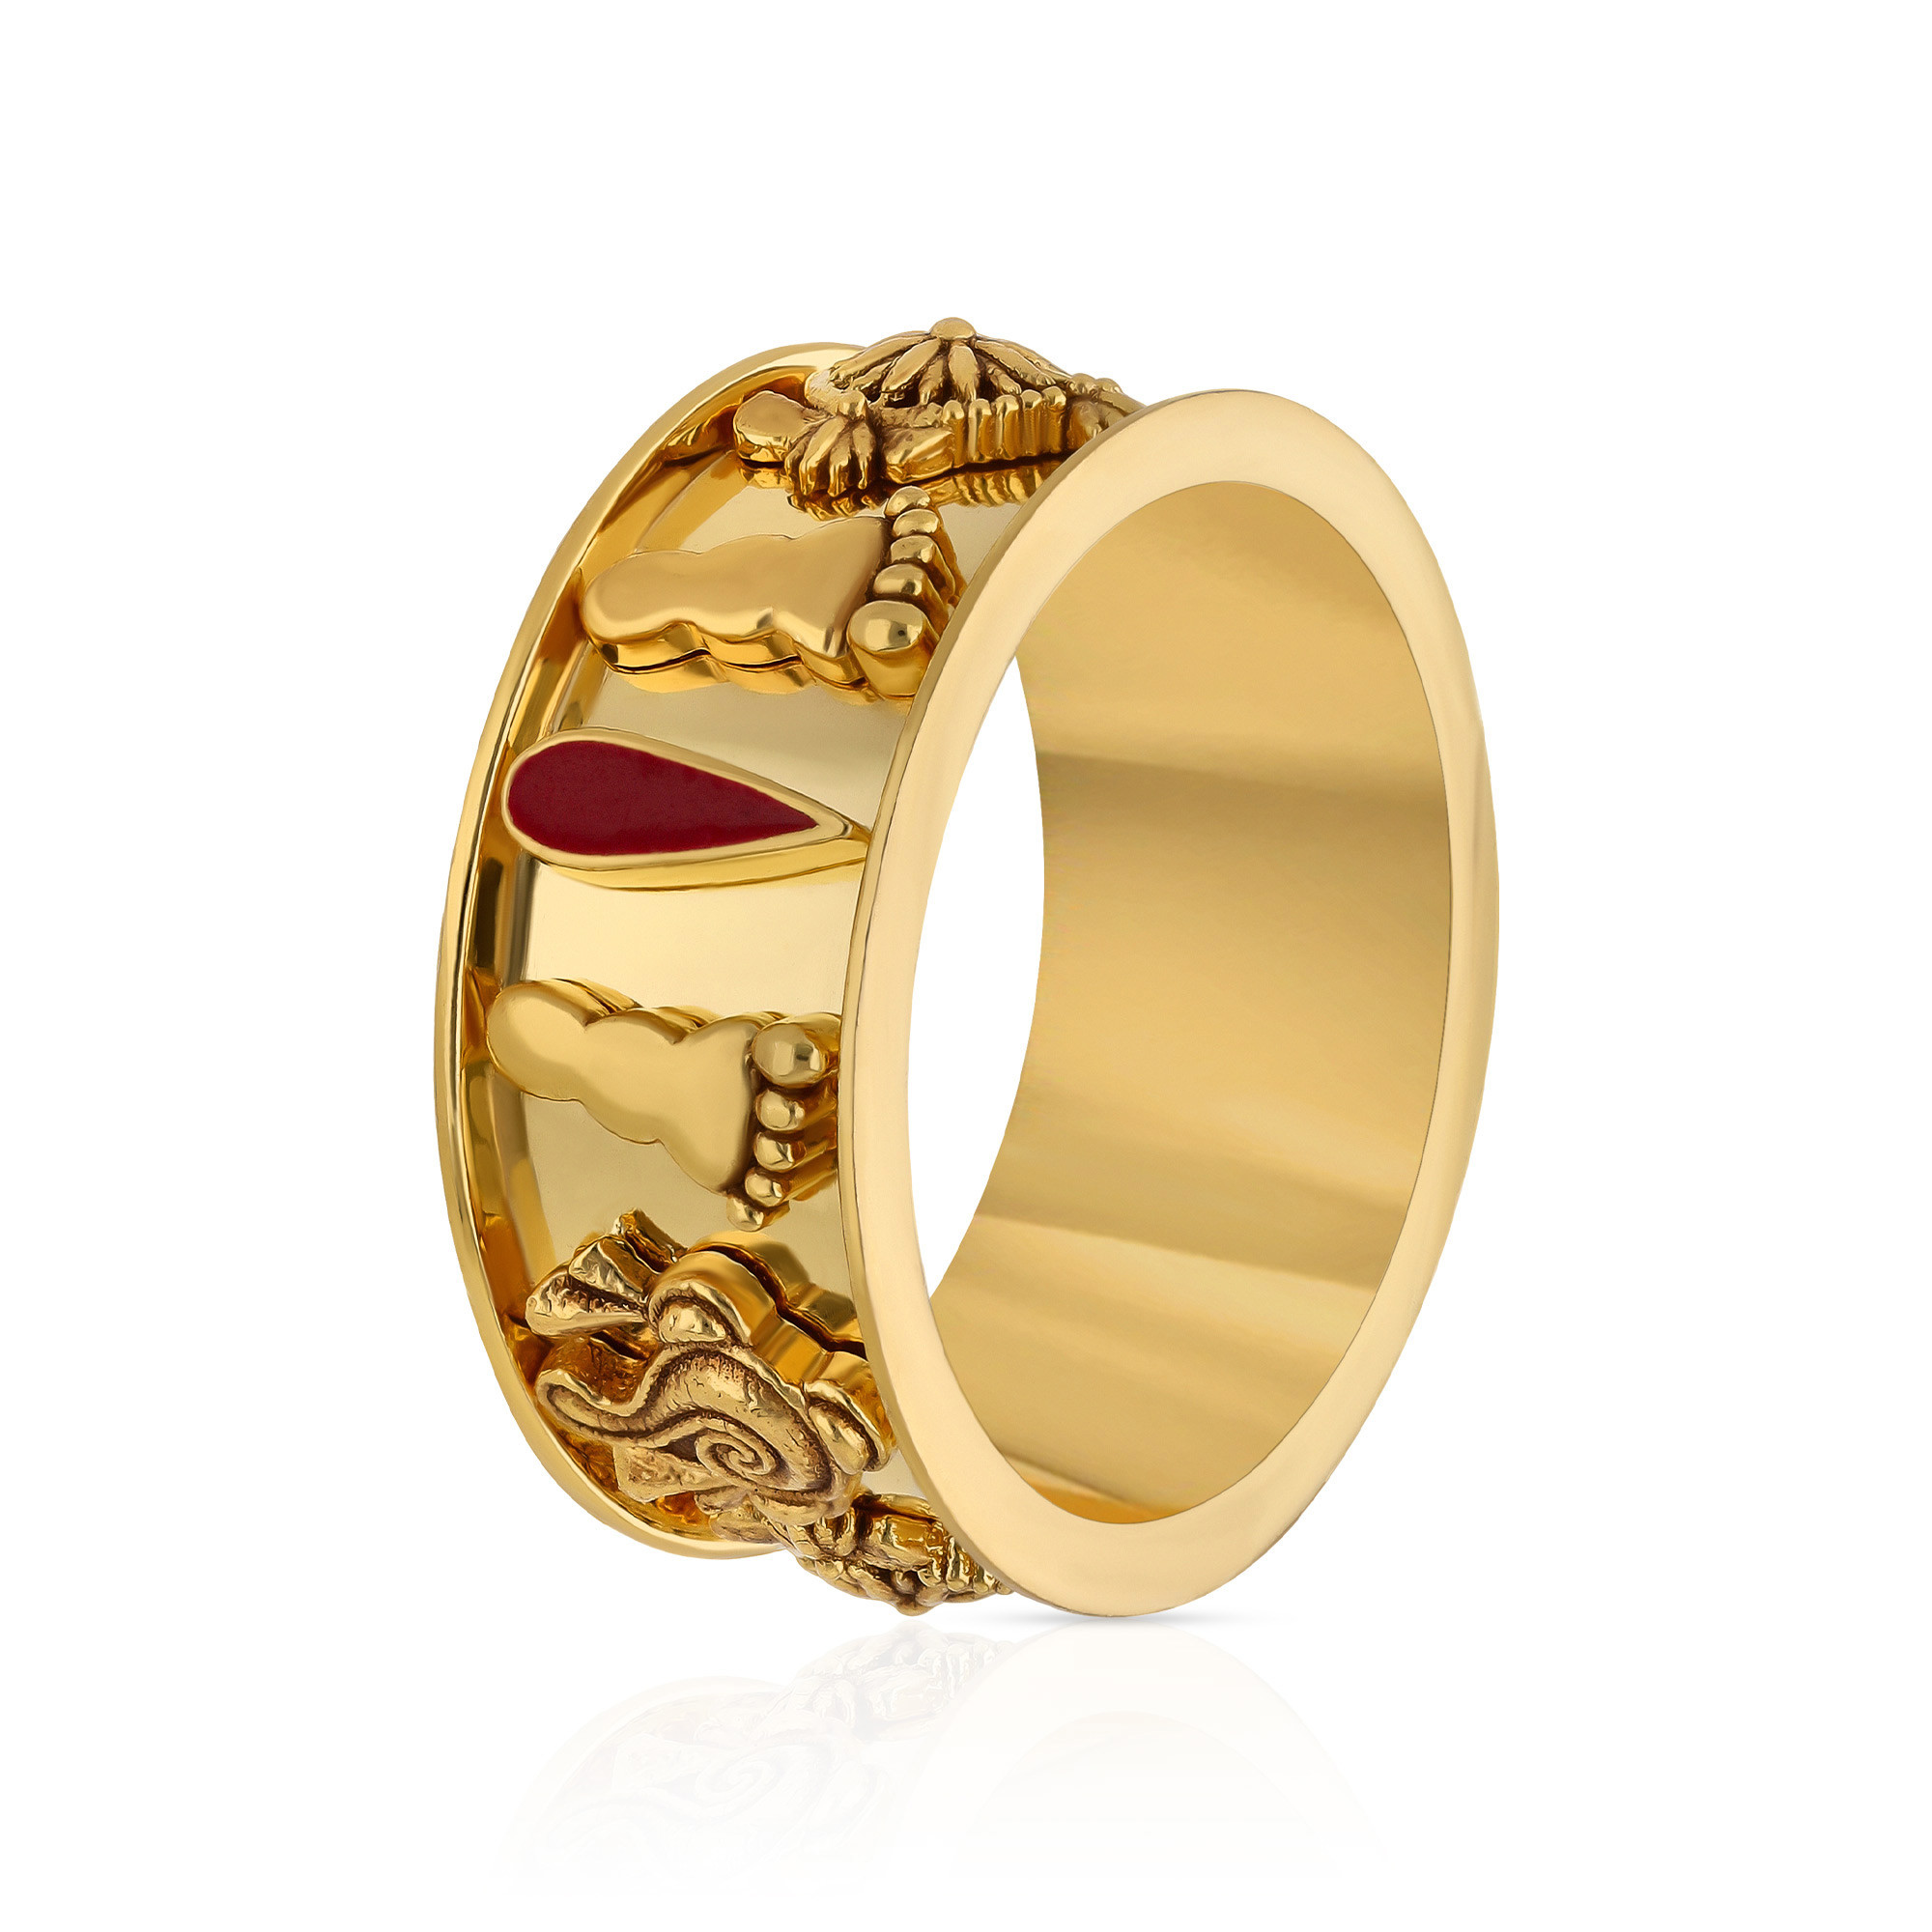 22 Carat Gold Ring - £180.00.00 (SKU:33386)